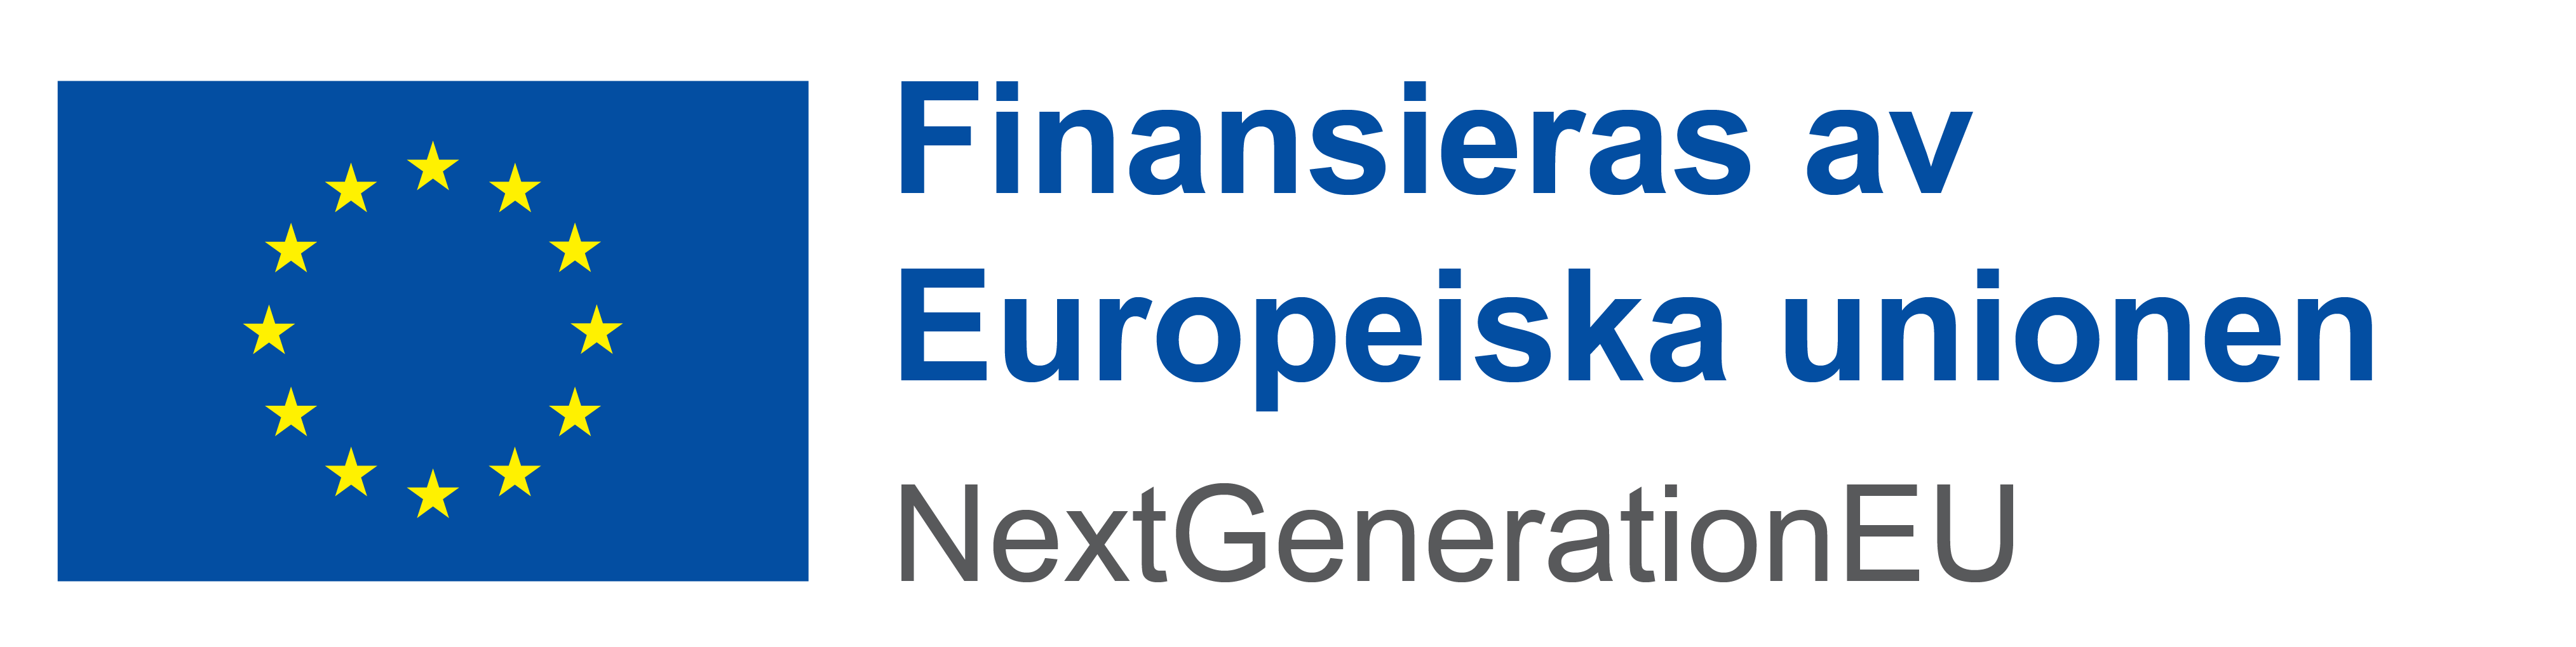 EUs logotyp med texten Finansieras av Europeiska unionen.